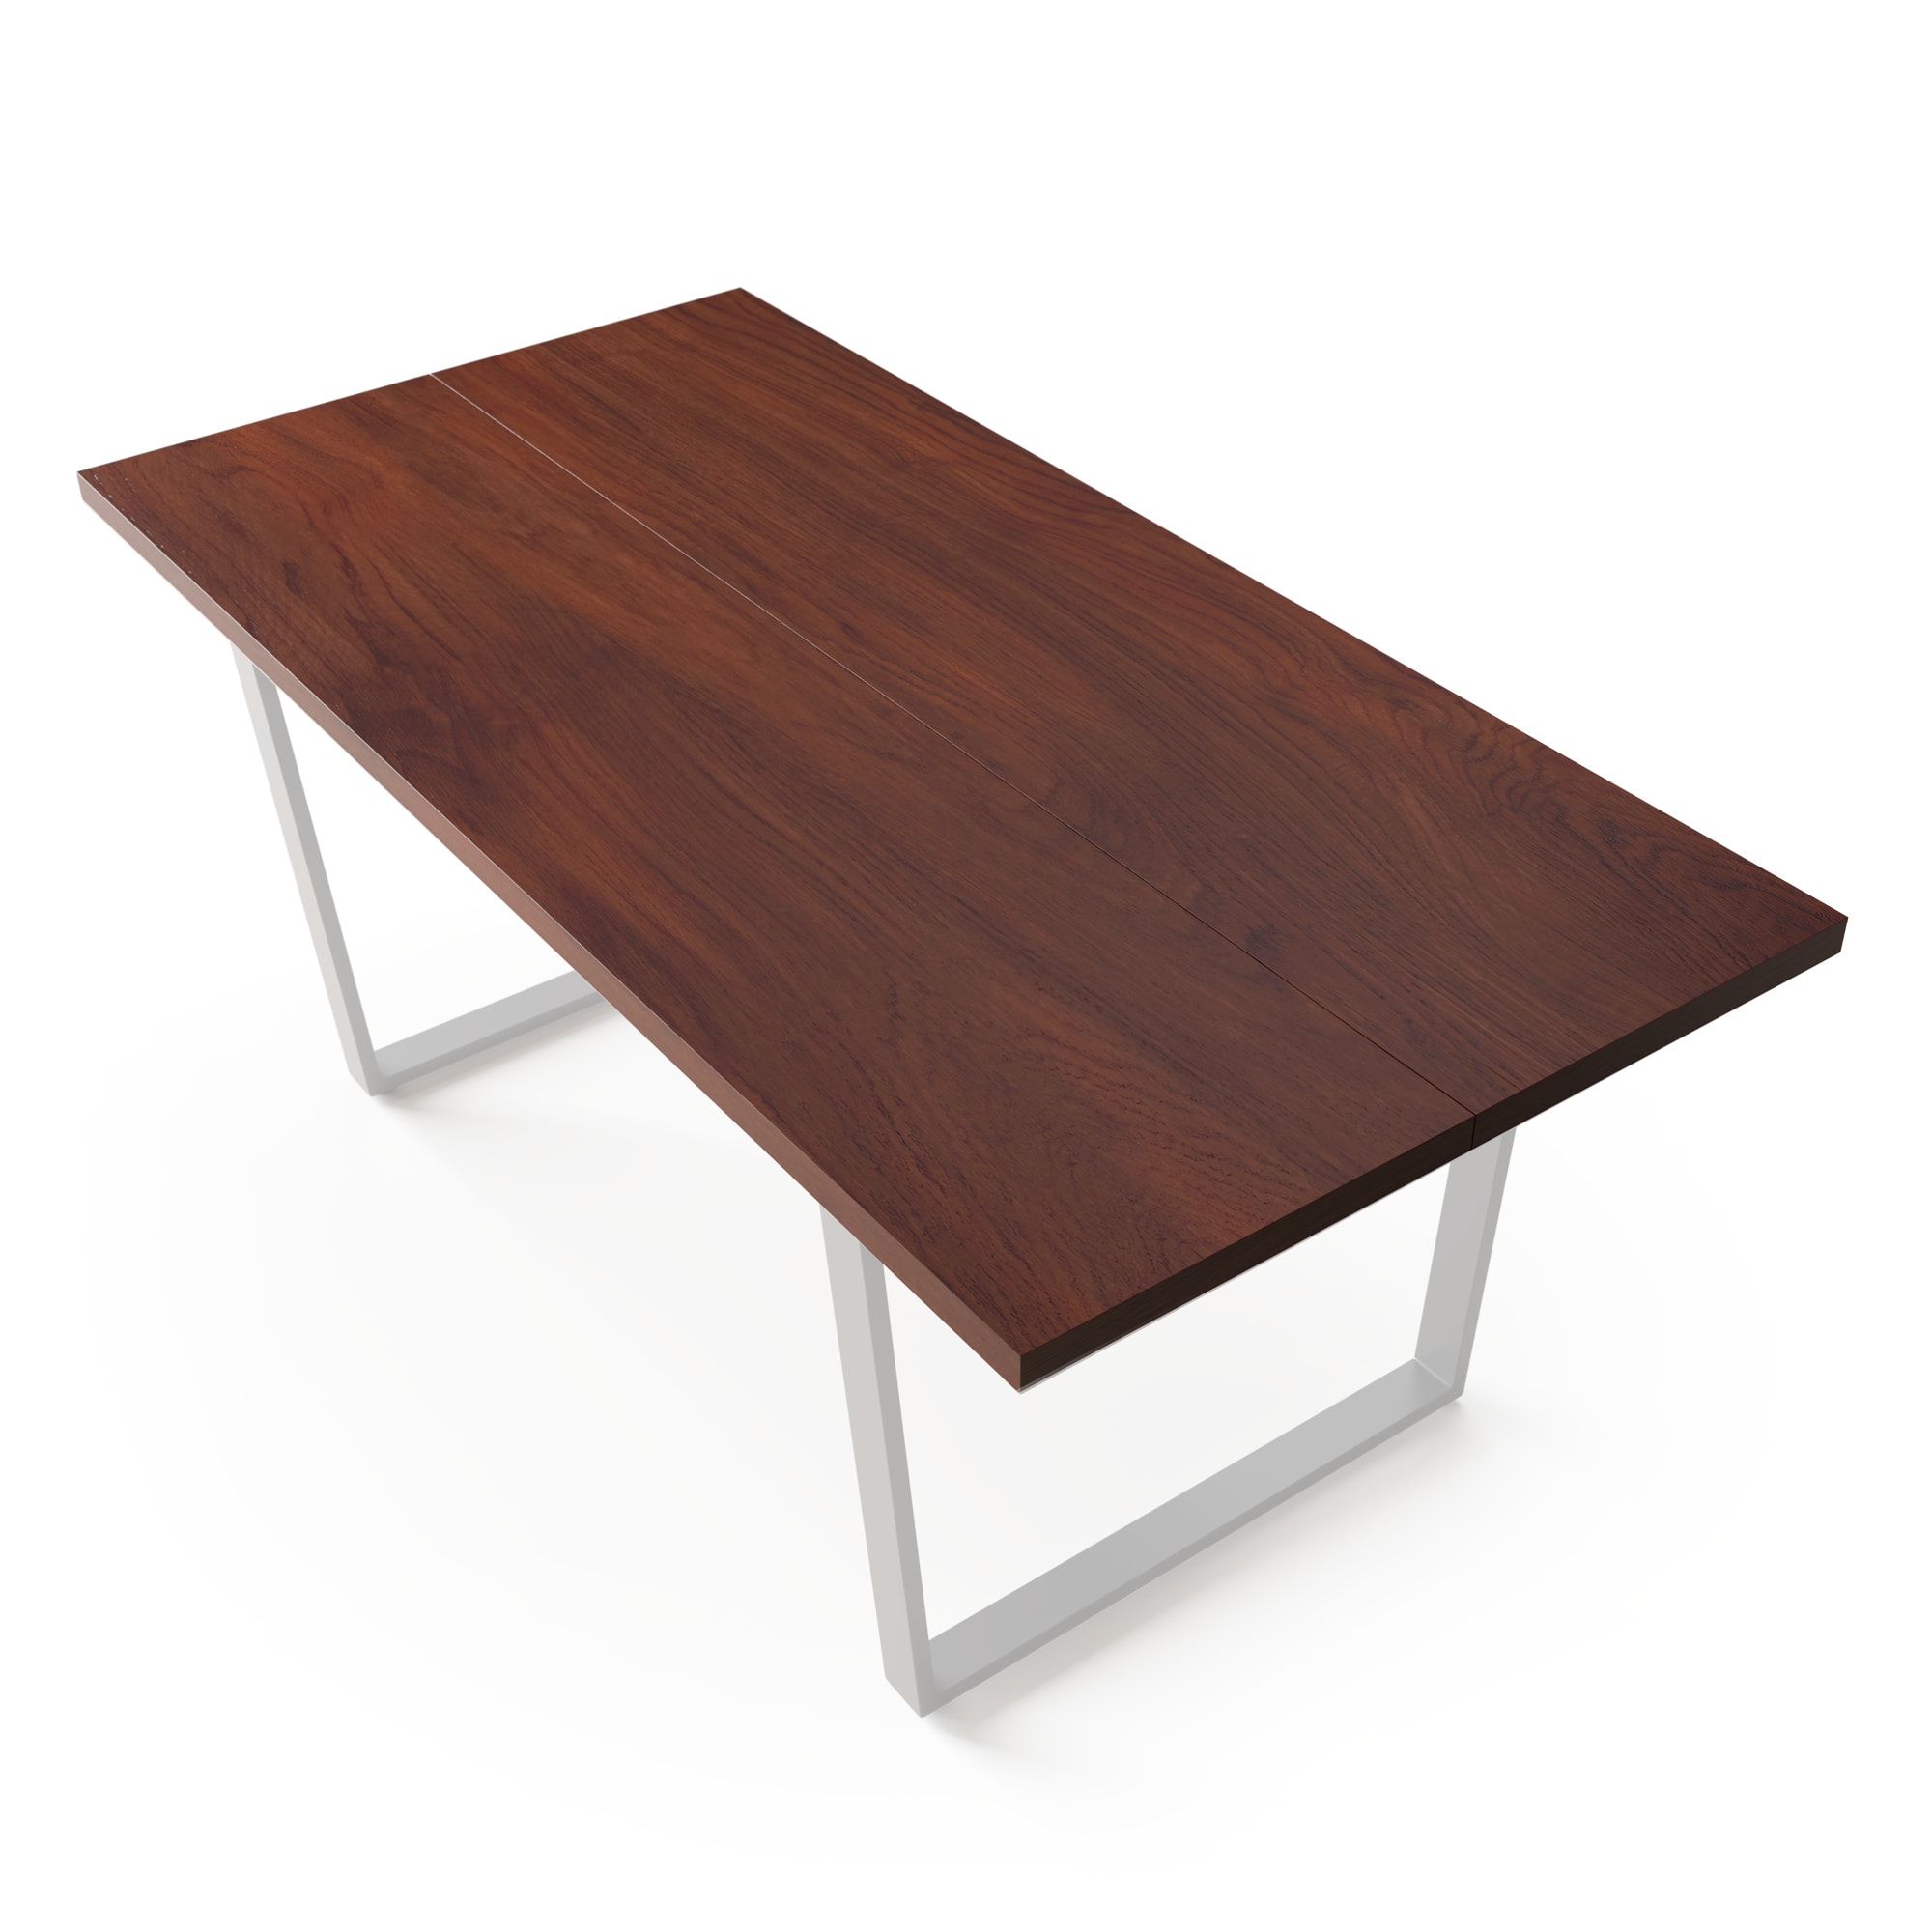 E-shop Blumfeldt Bearsdon Jedálenský stôl | moderný podkrovný stôl s povrchom z preglejky | 180 x 90 cm | teakový vzhľad | do kuchyne a jedálne | spĺňa európske normy